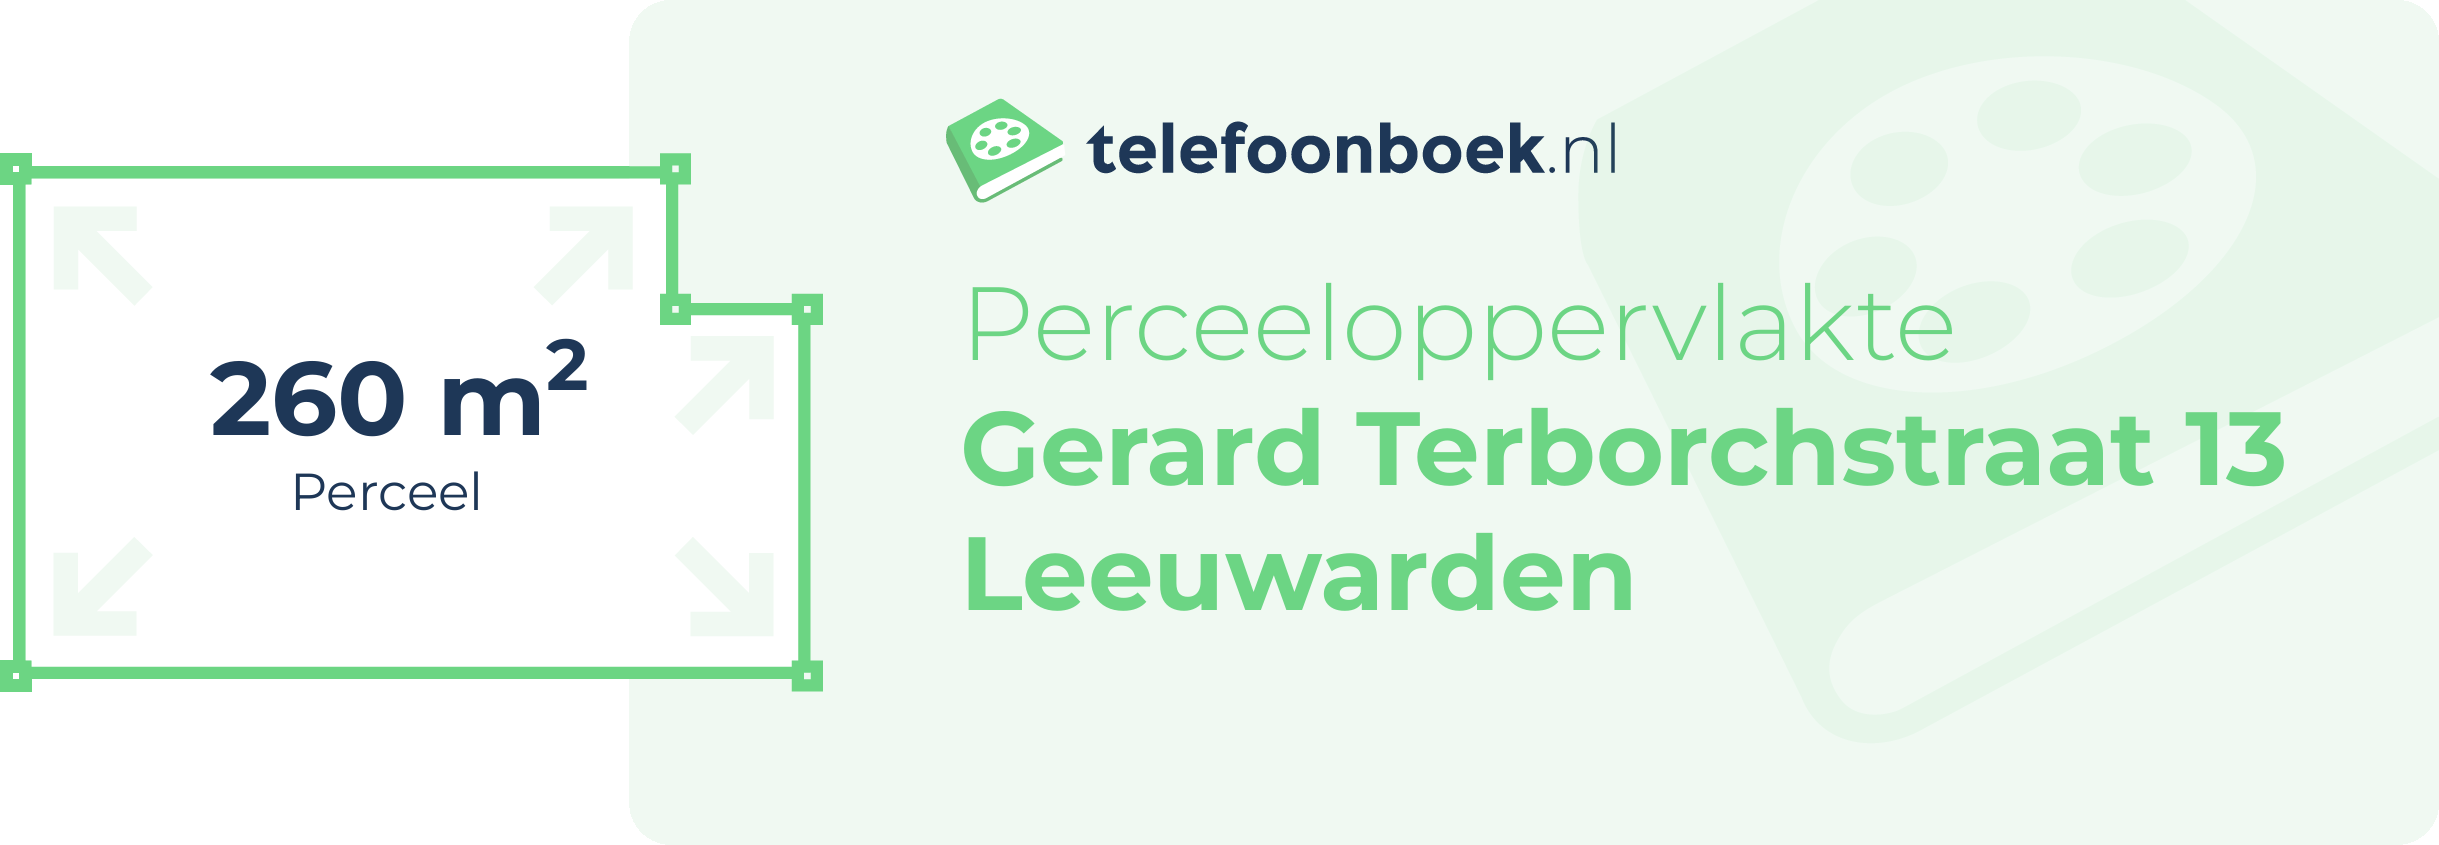 Perceeloppervlakte Gerard Terborchstraat 13 Leeuwarden